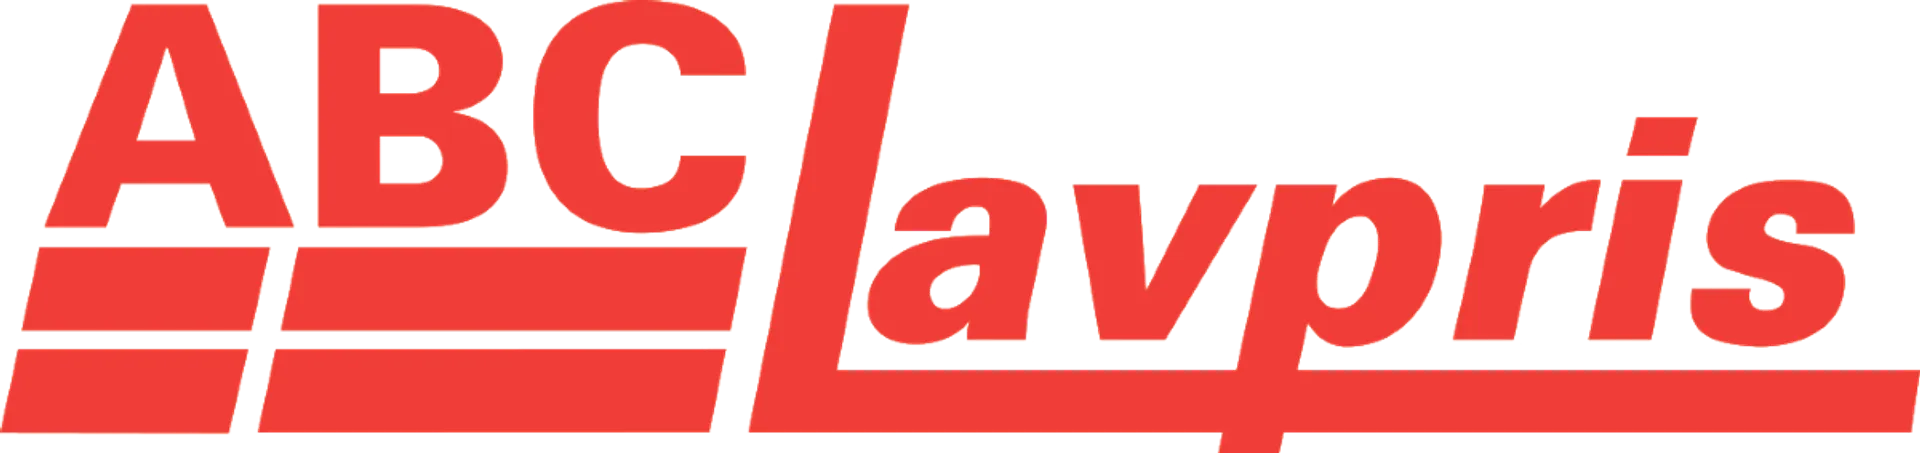 ABC LAVPRIS logo